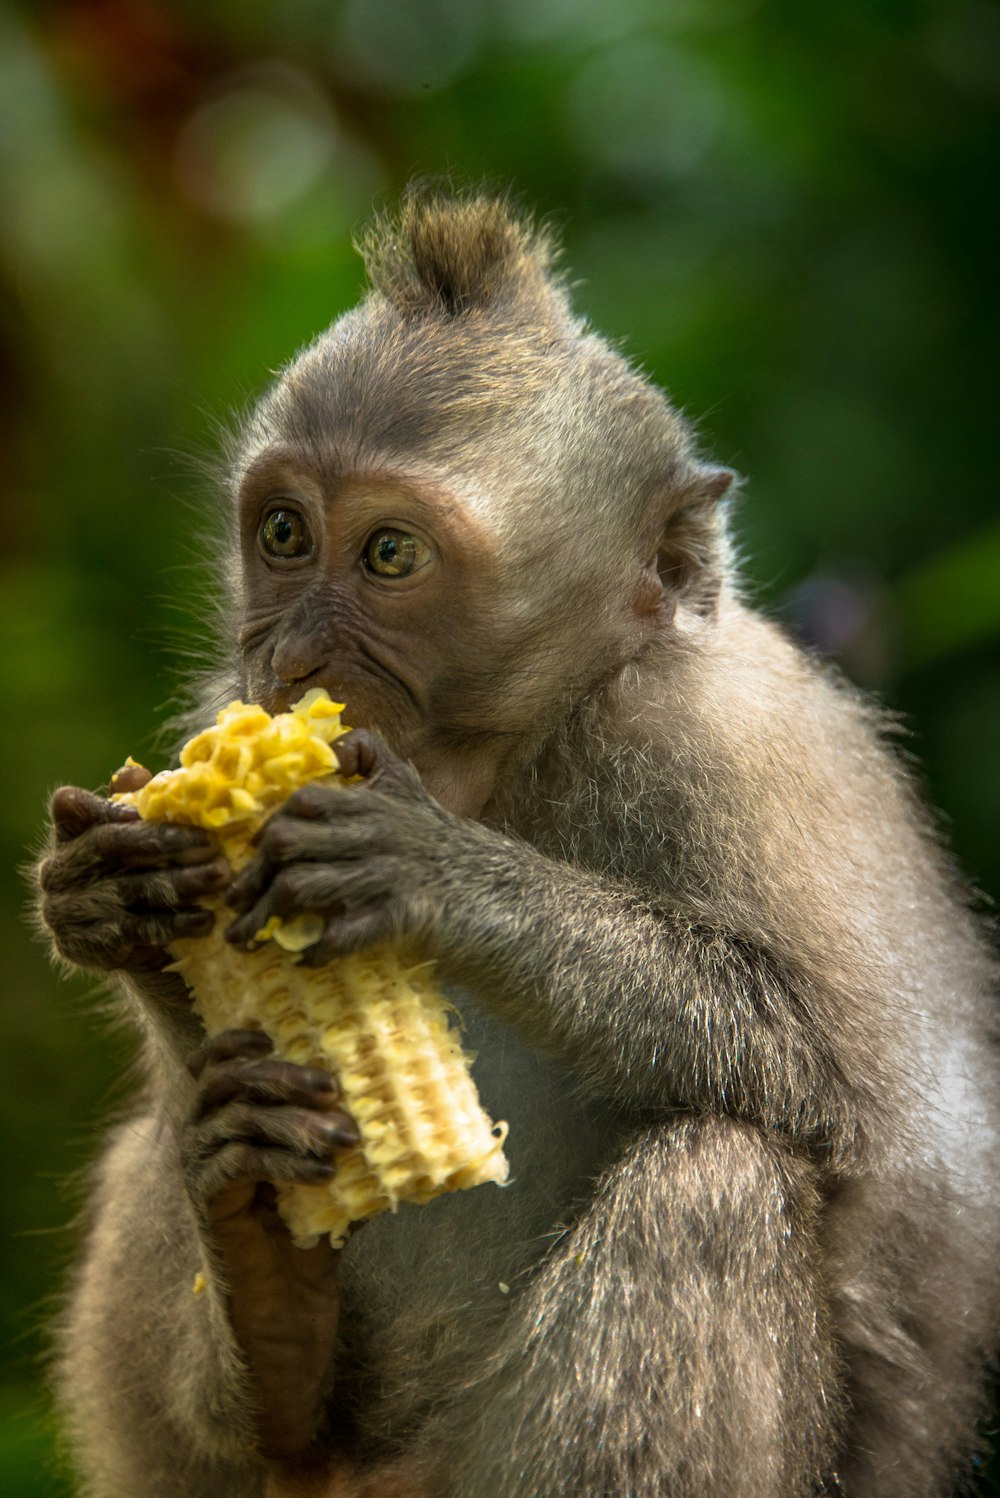 brown monkey eating corn during daytime